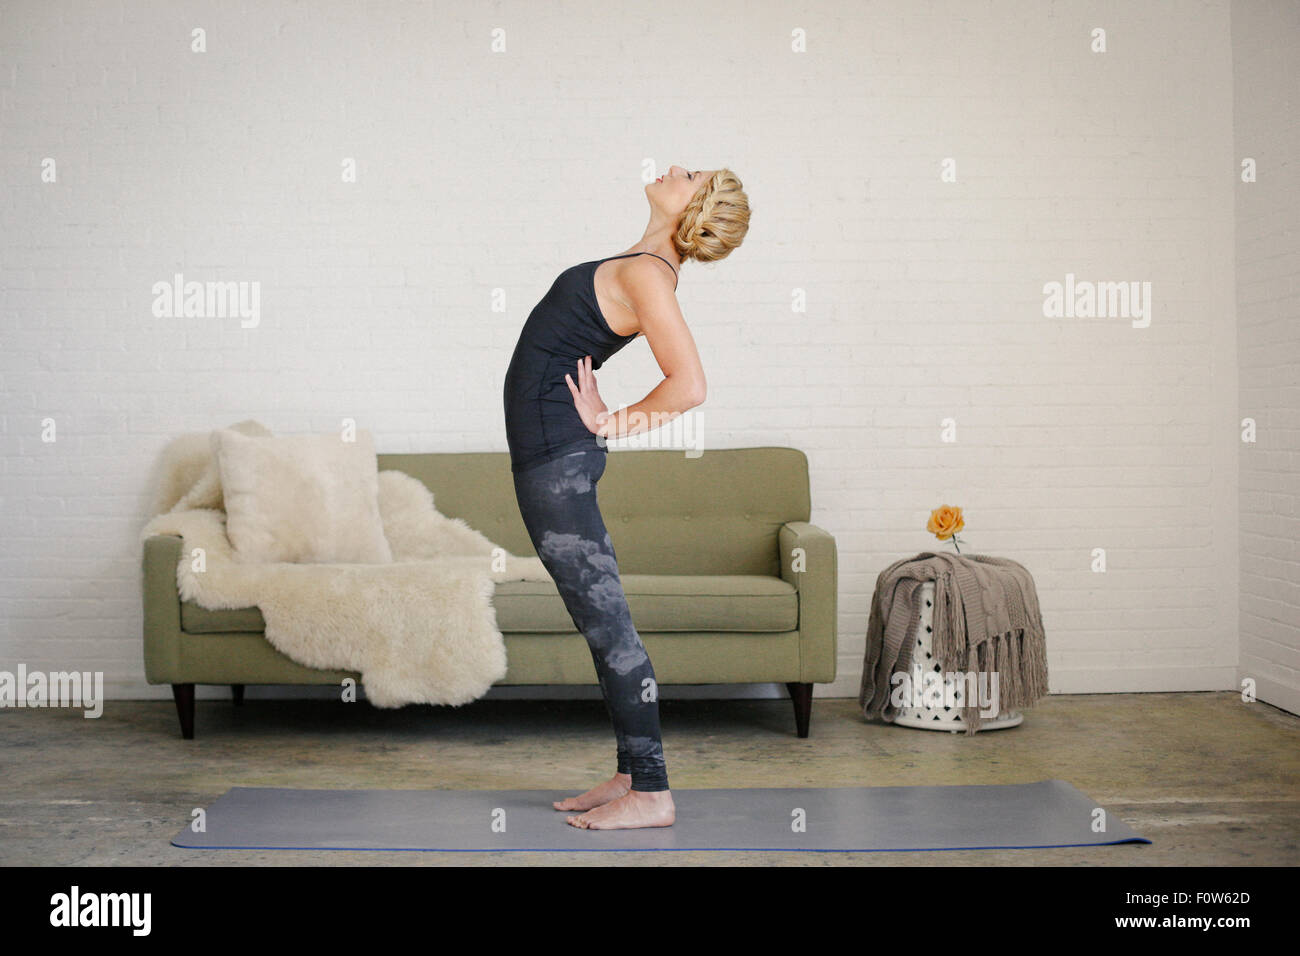 Eine blonde Frau auf eine Yoga-Matte in einem Raum stehen, Yoga machen, biegen nach hinten mit den Händen an den Hüften. Stockfoto